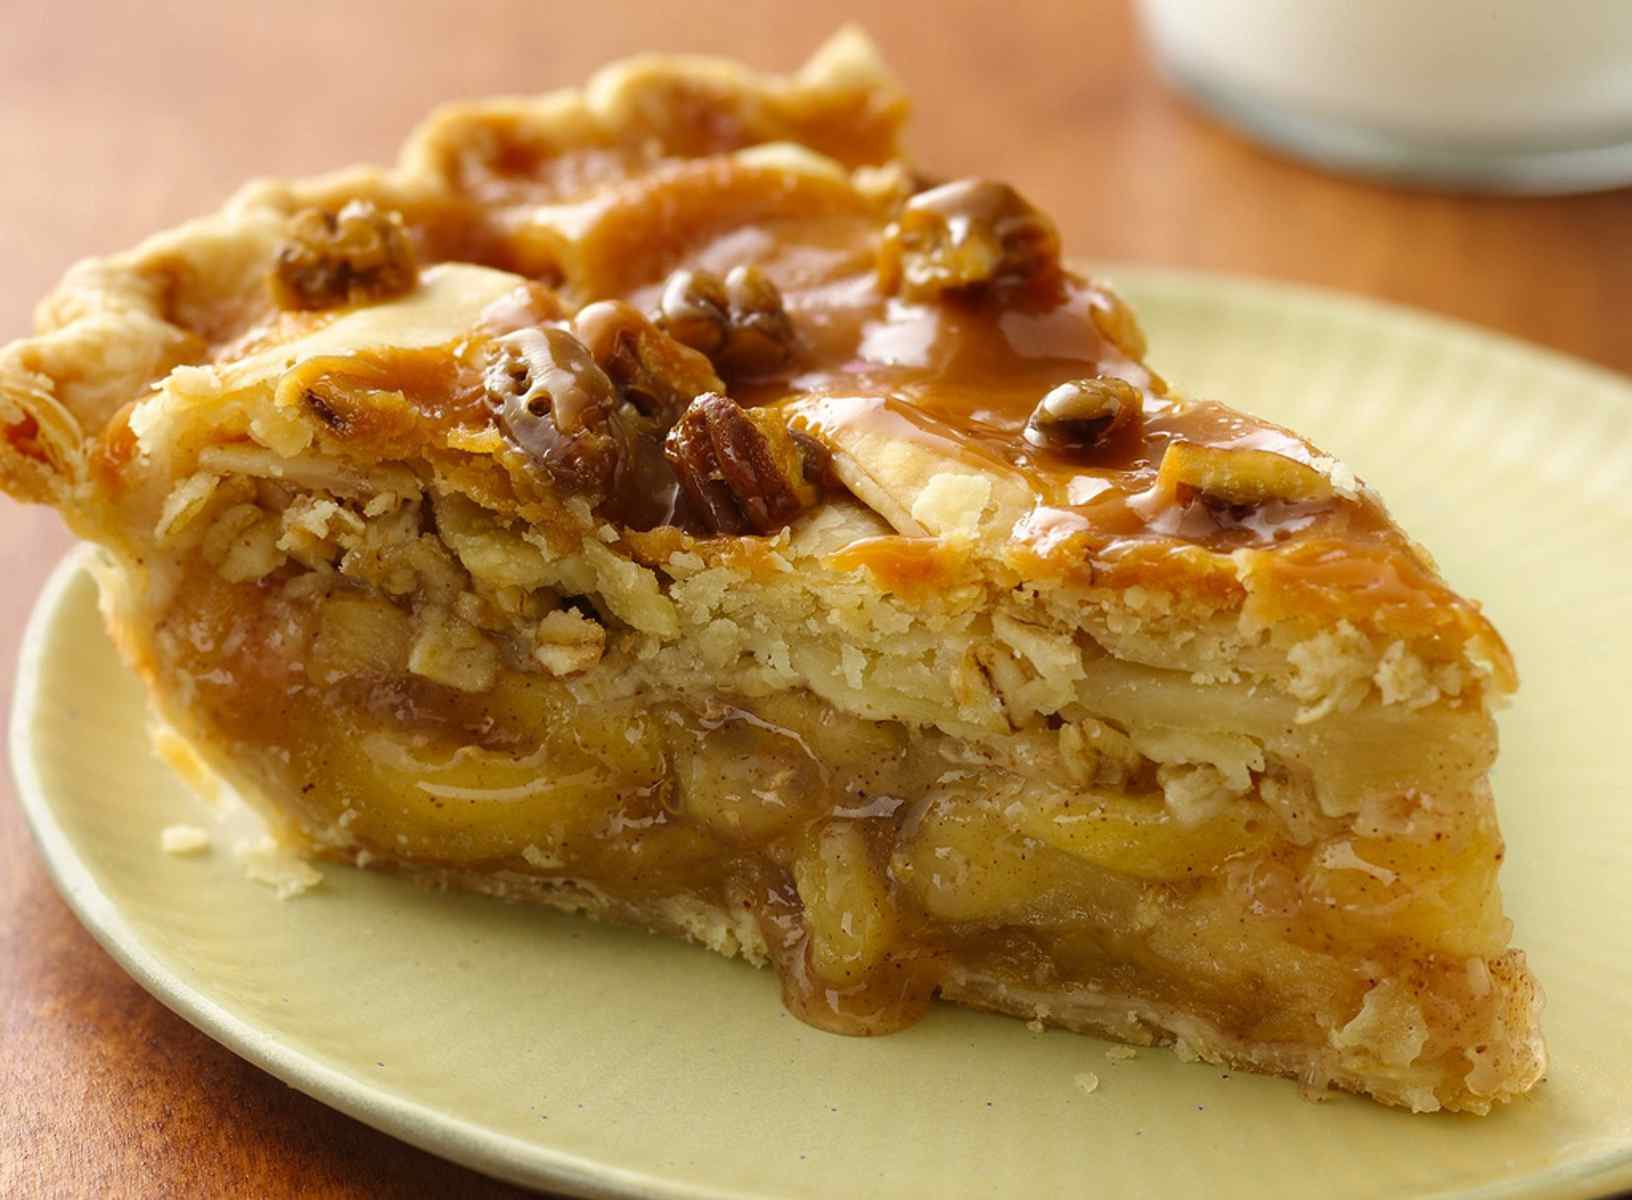 Пирог с яблоками рецепт с фото пошагово в духовке видео рецепт с фото